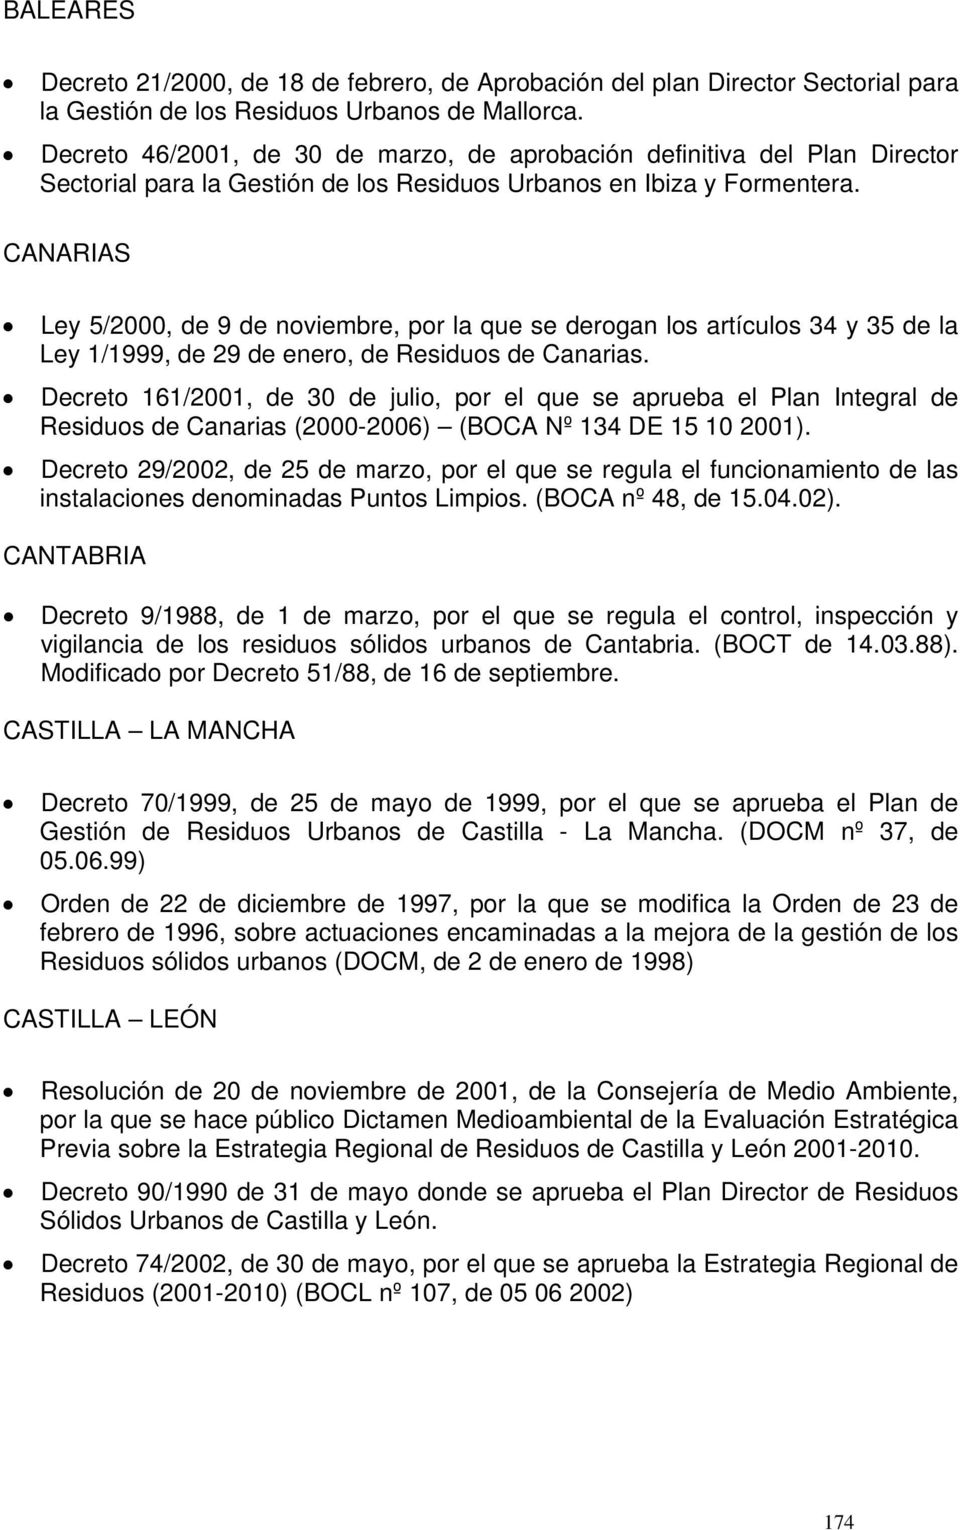 CANARIAS Ley 5/2000, de 9 de noviembre, por la que se derogan los artículos 34 y 35 de la Ley 1/1999, de 29 de enero, de Residuos de Canarias.